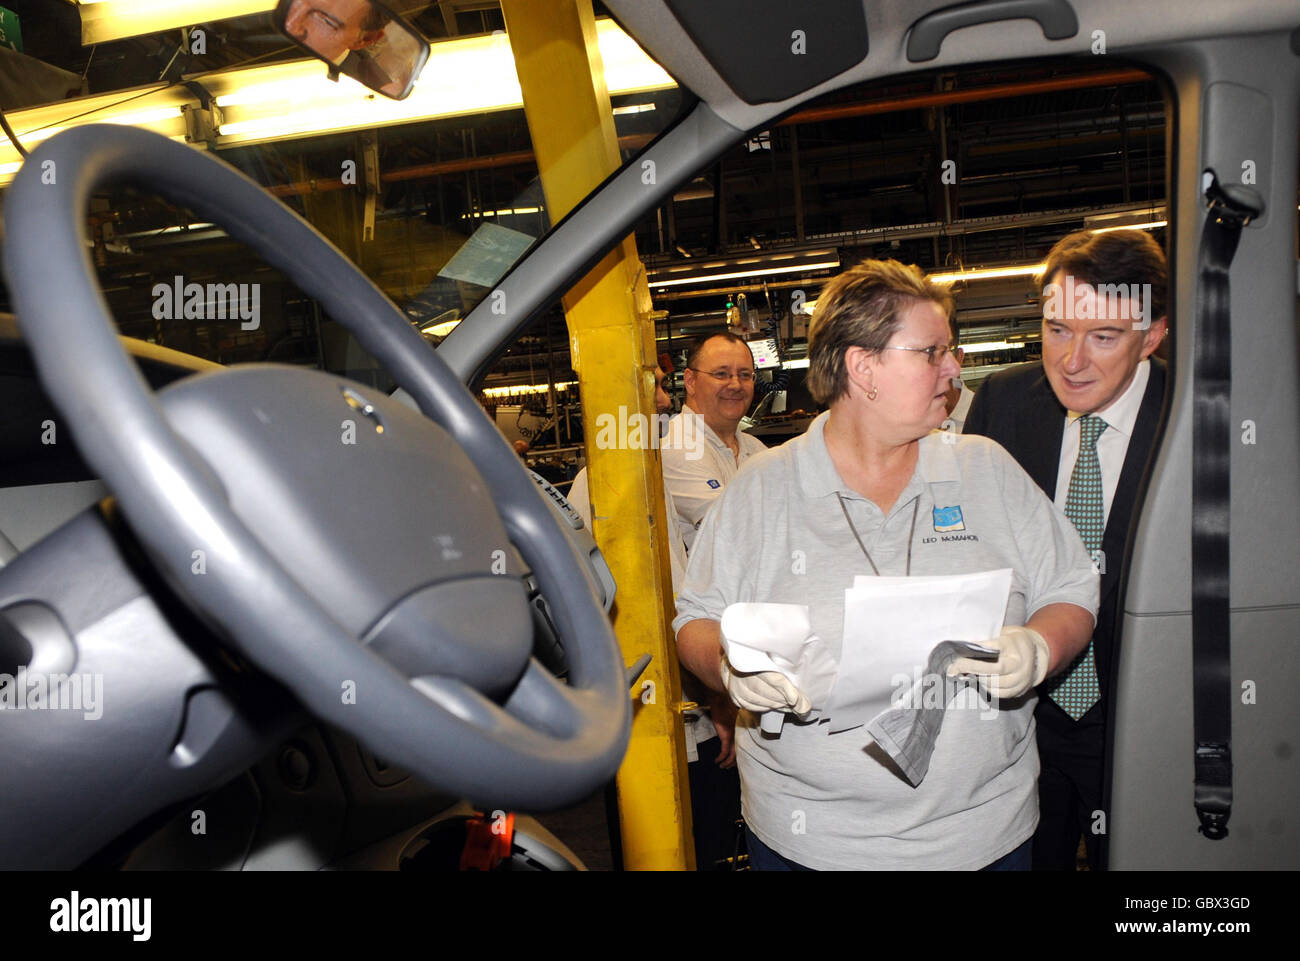 Le secrétaire d'entreprise Lord Mandelson rencontre les travailleurs et inspecte la chaîne de production lors d'une visite à l'usine GM de Luton. Banque D'Images